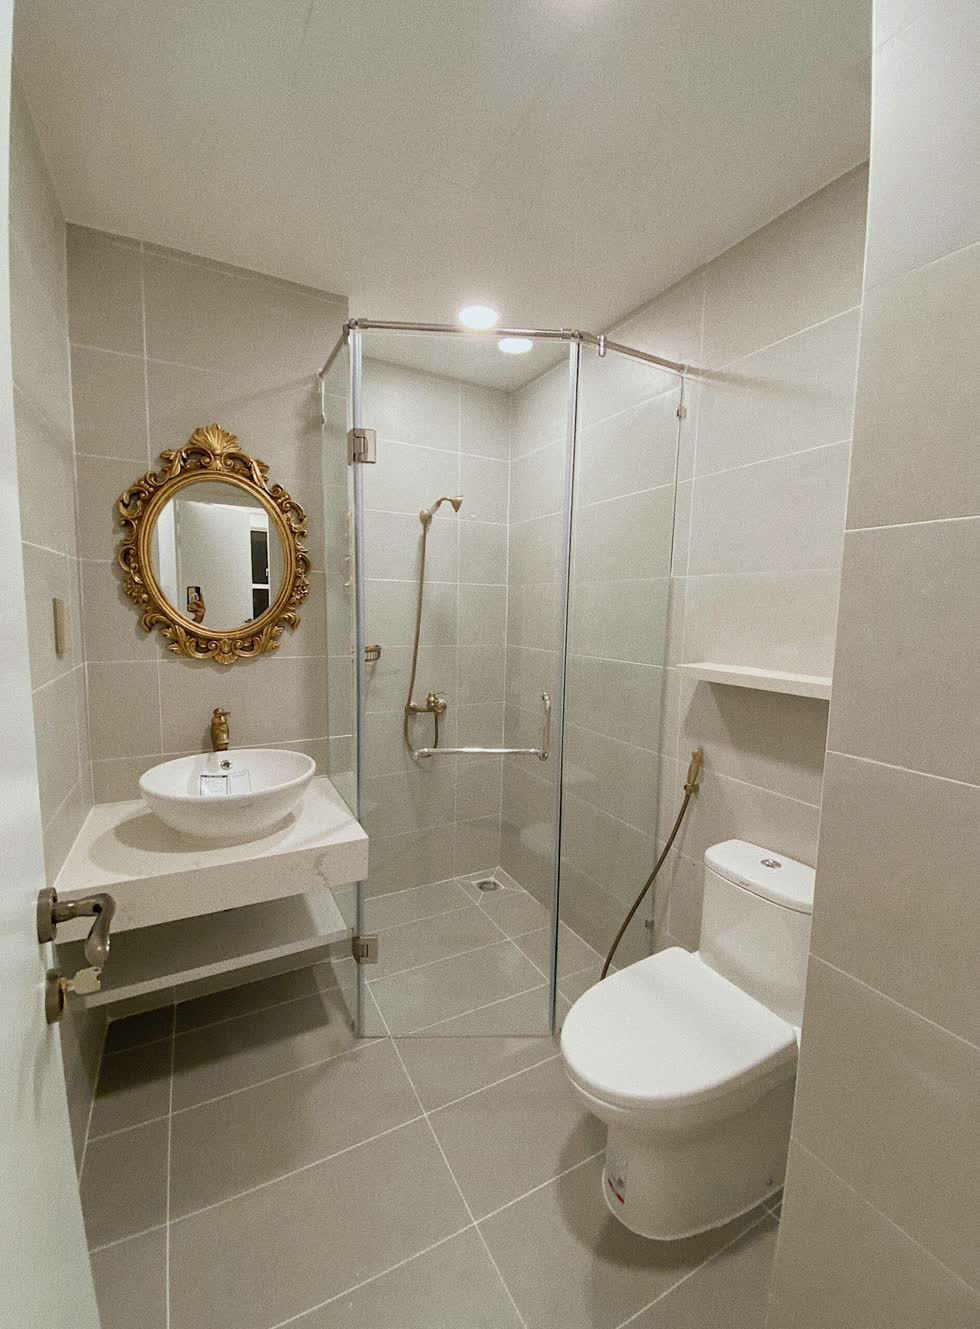 Phòng vệ sinh nhỏ xinh, hiện đại, được phân chia khu khô - ướt riêng biệt.